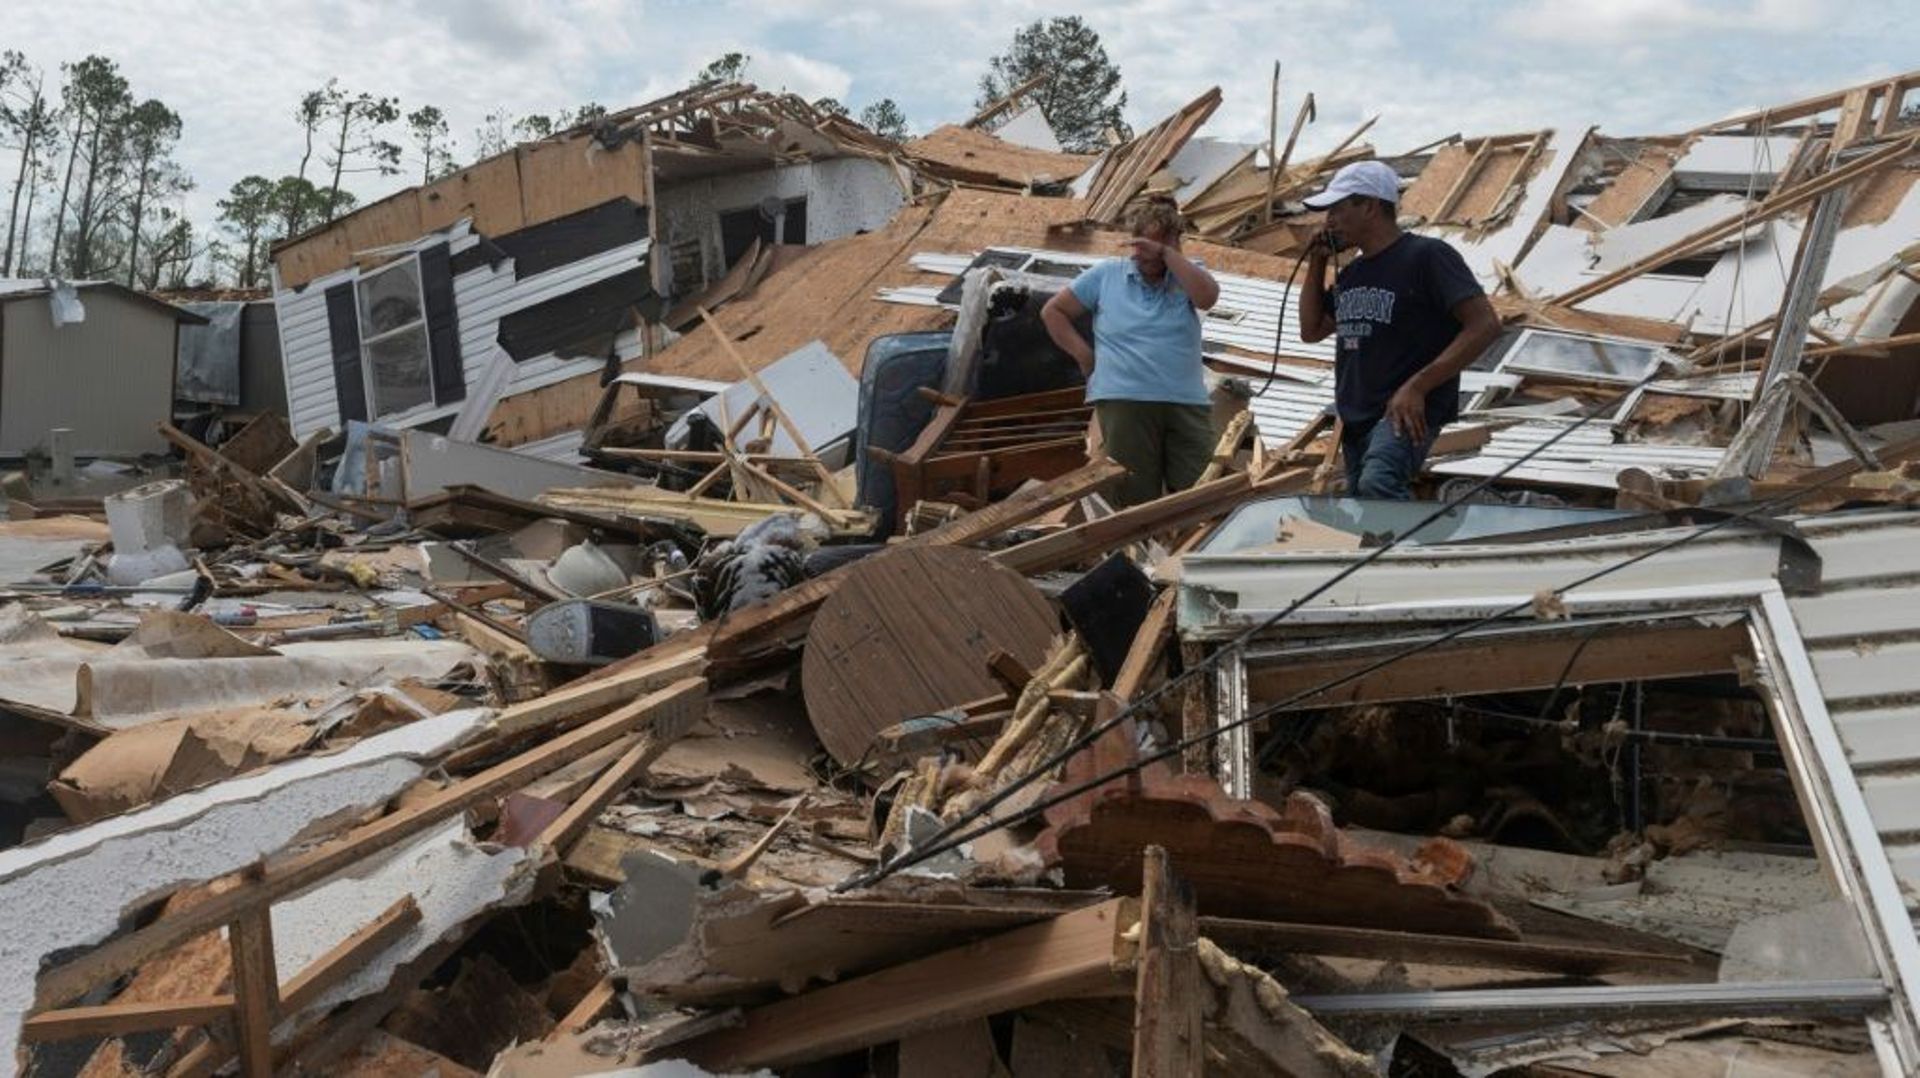 Des habitants de Lake Charles dans les débris de leur mobile home détruit par le passage de l'ouragan Laura, le 27 août 2020 en Louisiane